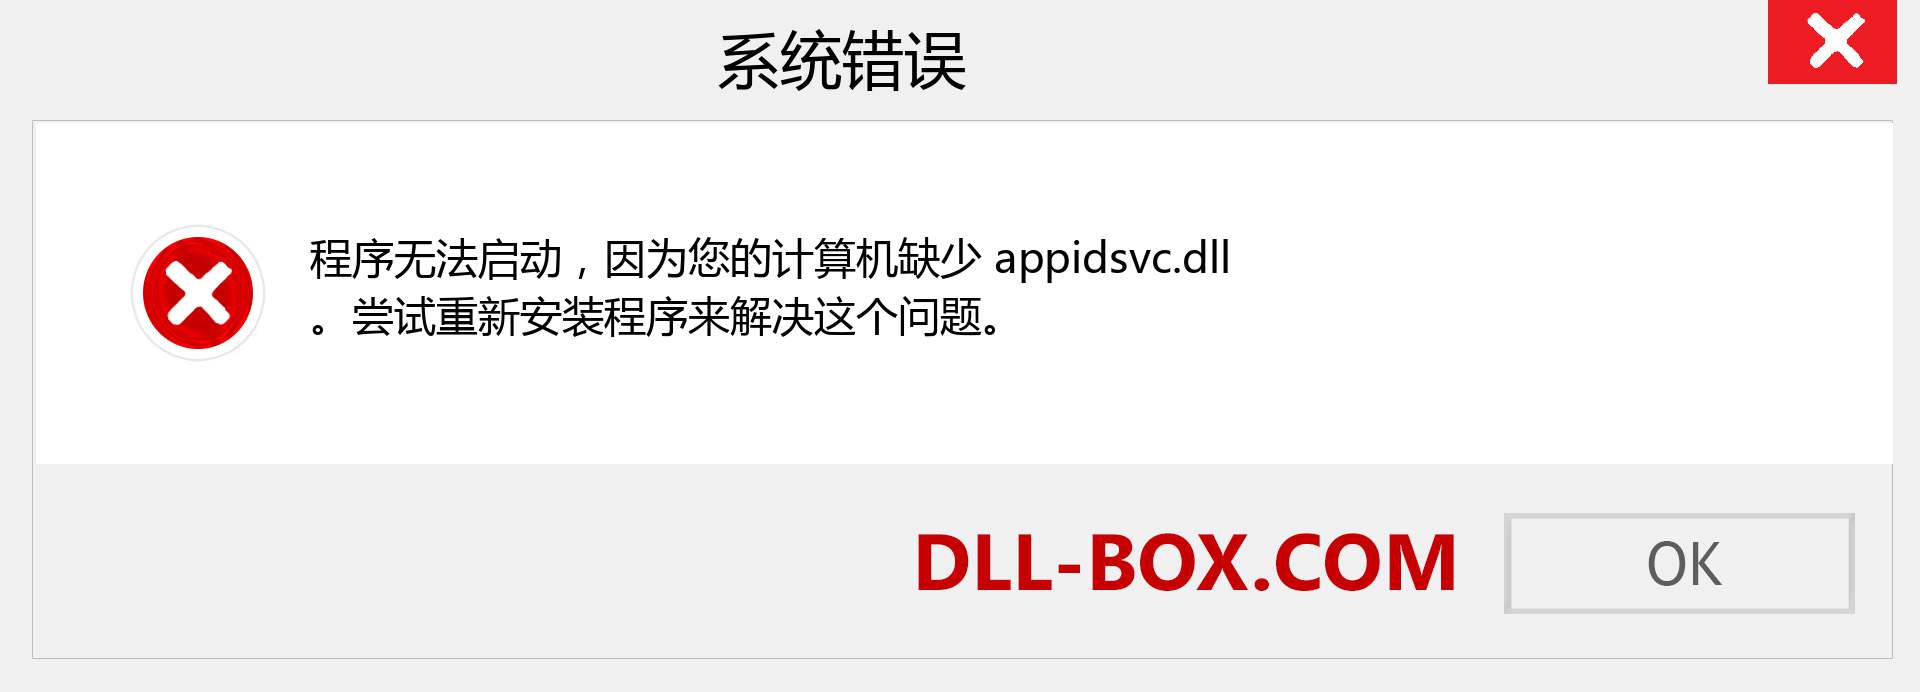 appidsvc.dll 文件丢失？。 适用于 Windows 7、8、10 的下载 - 修复 Windows、照片、图像上的 appidsvc dll 丢失错误